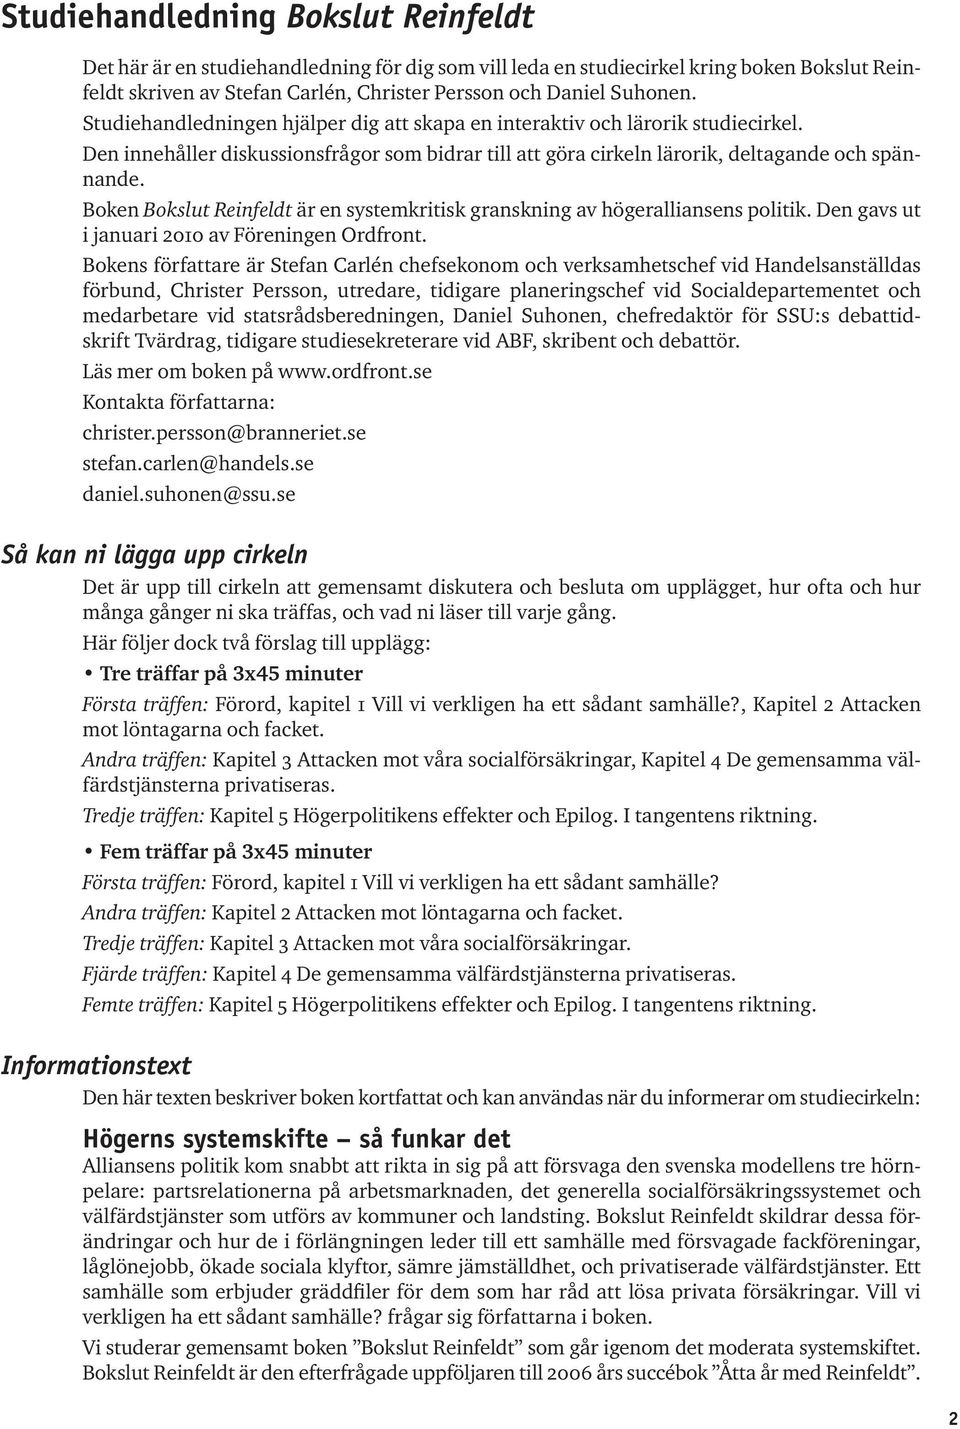 Boken Bokslut Reinfeldt är en systemkritisk granskning av högeralliansens politik. Den gavs ut i januari 2010 av Föreningen Ordfront.